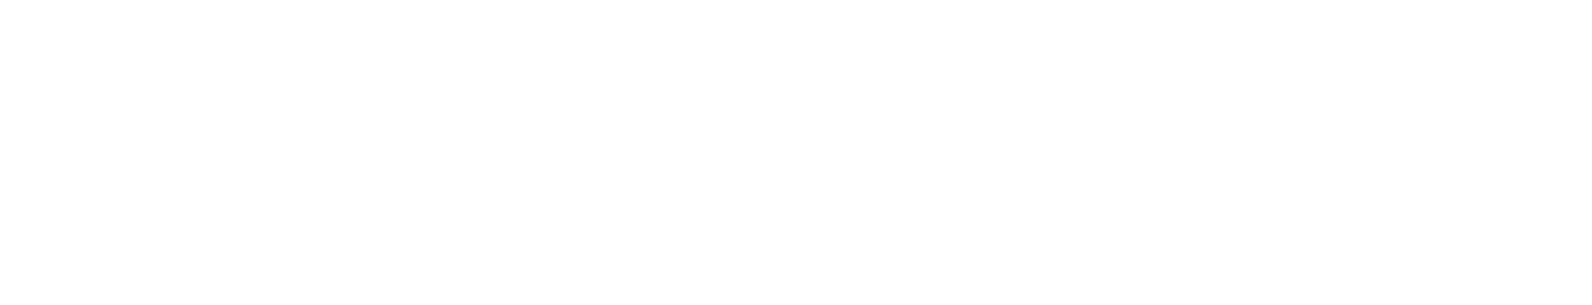 Adicet Bio logo grand pour les fonds sombres (PNG transparent)